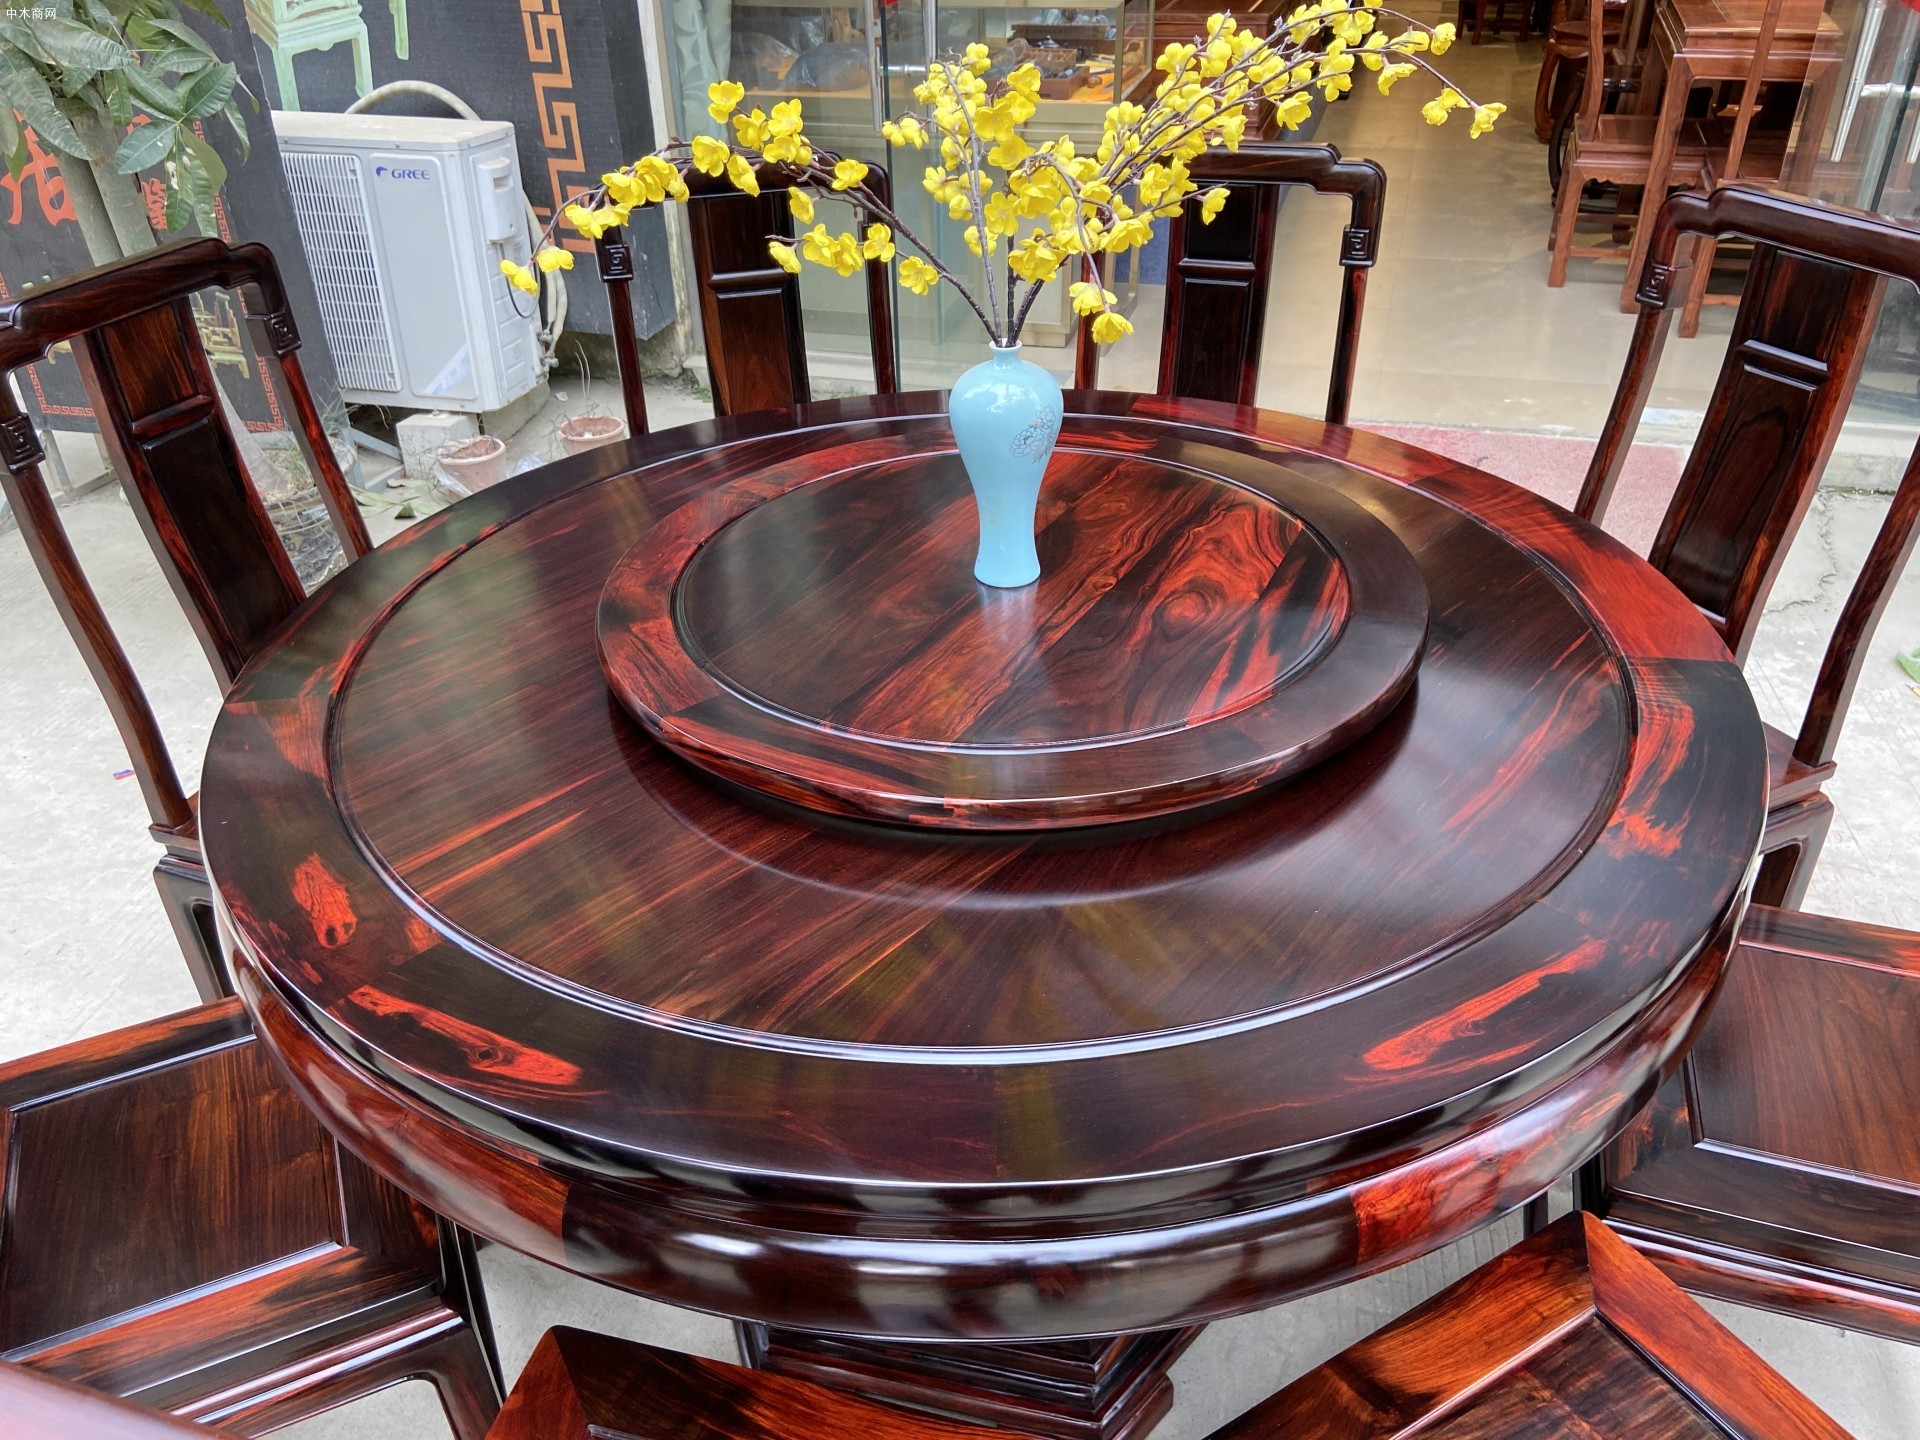 老挝大红酸枝餐桌用什么油擦最好品牌